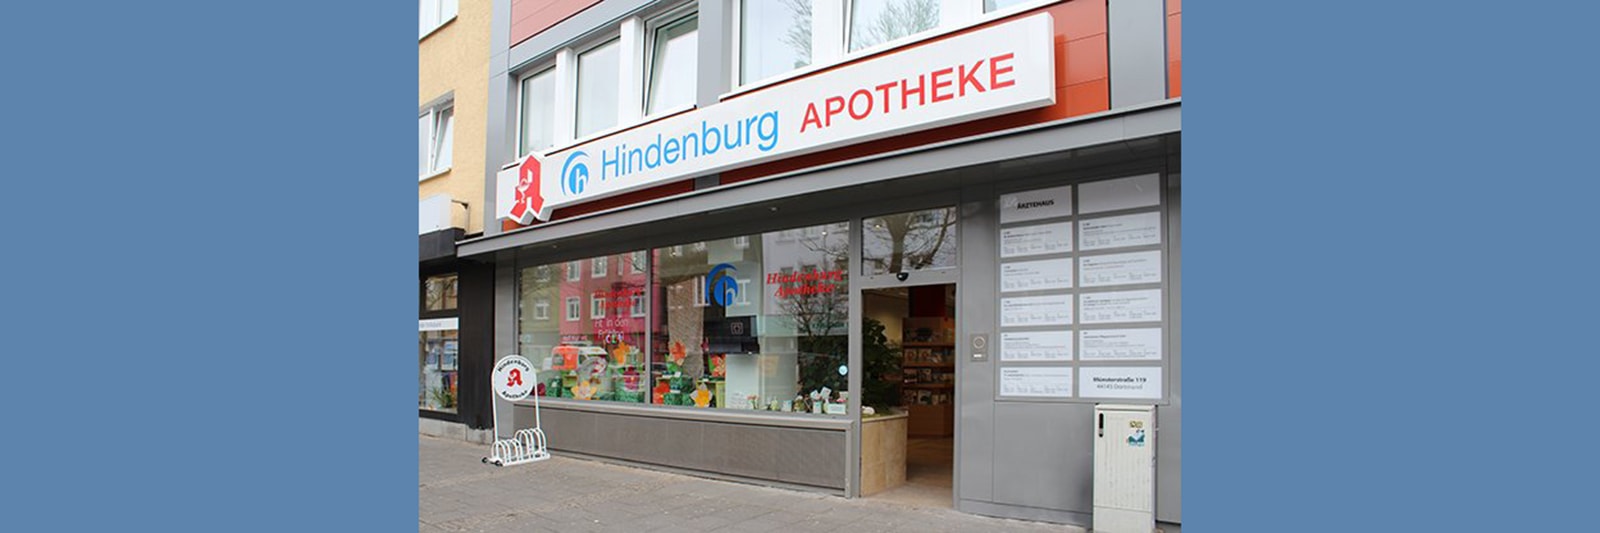 Hindenburg-Apotheke, Münsterstr. 119 in Dortmund